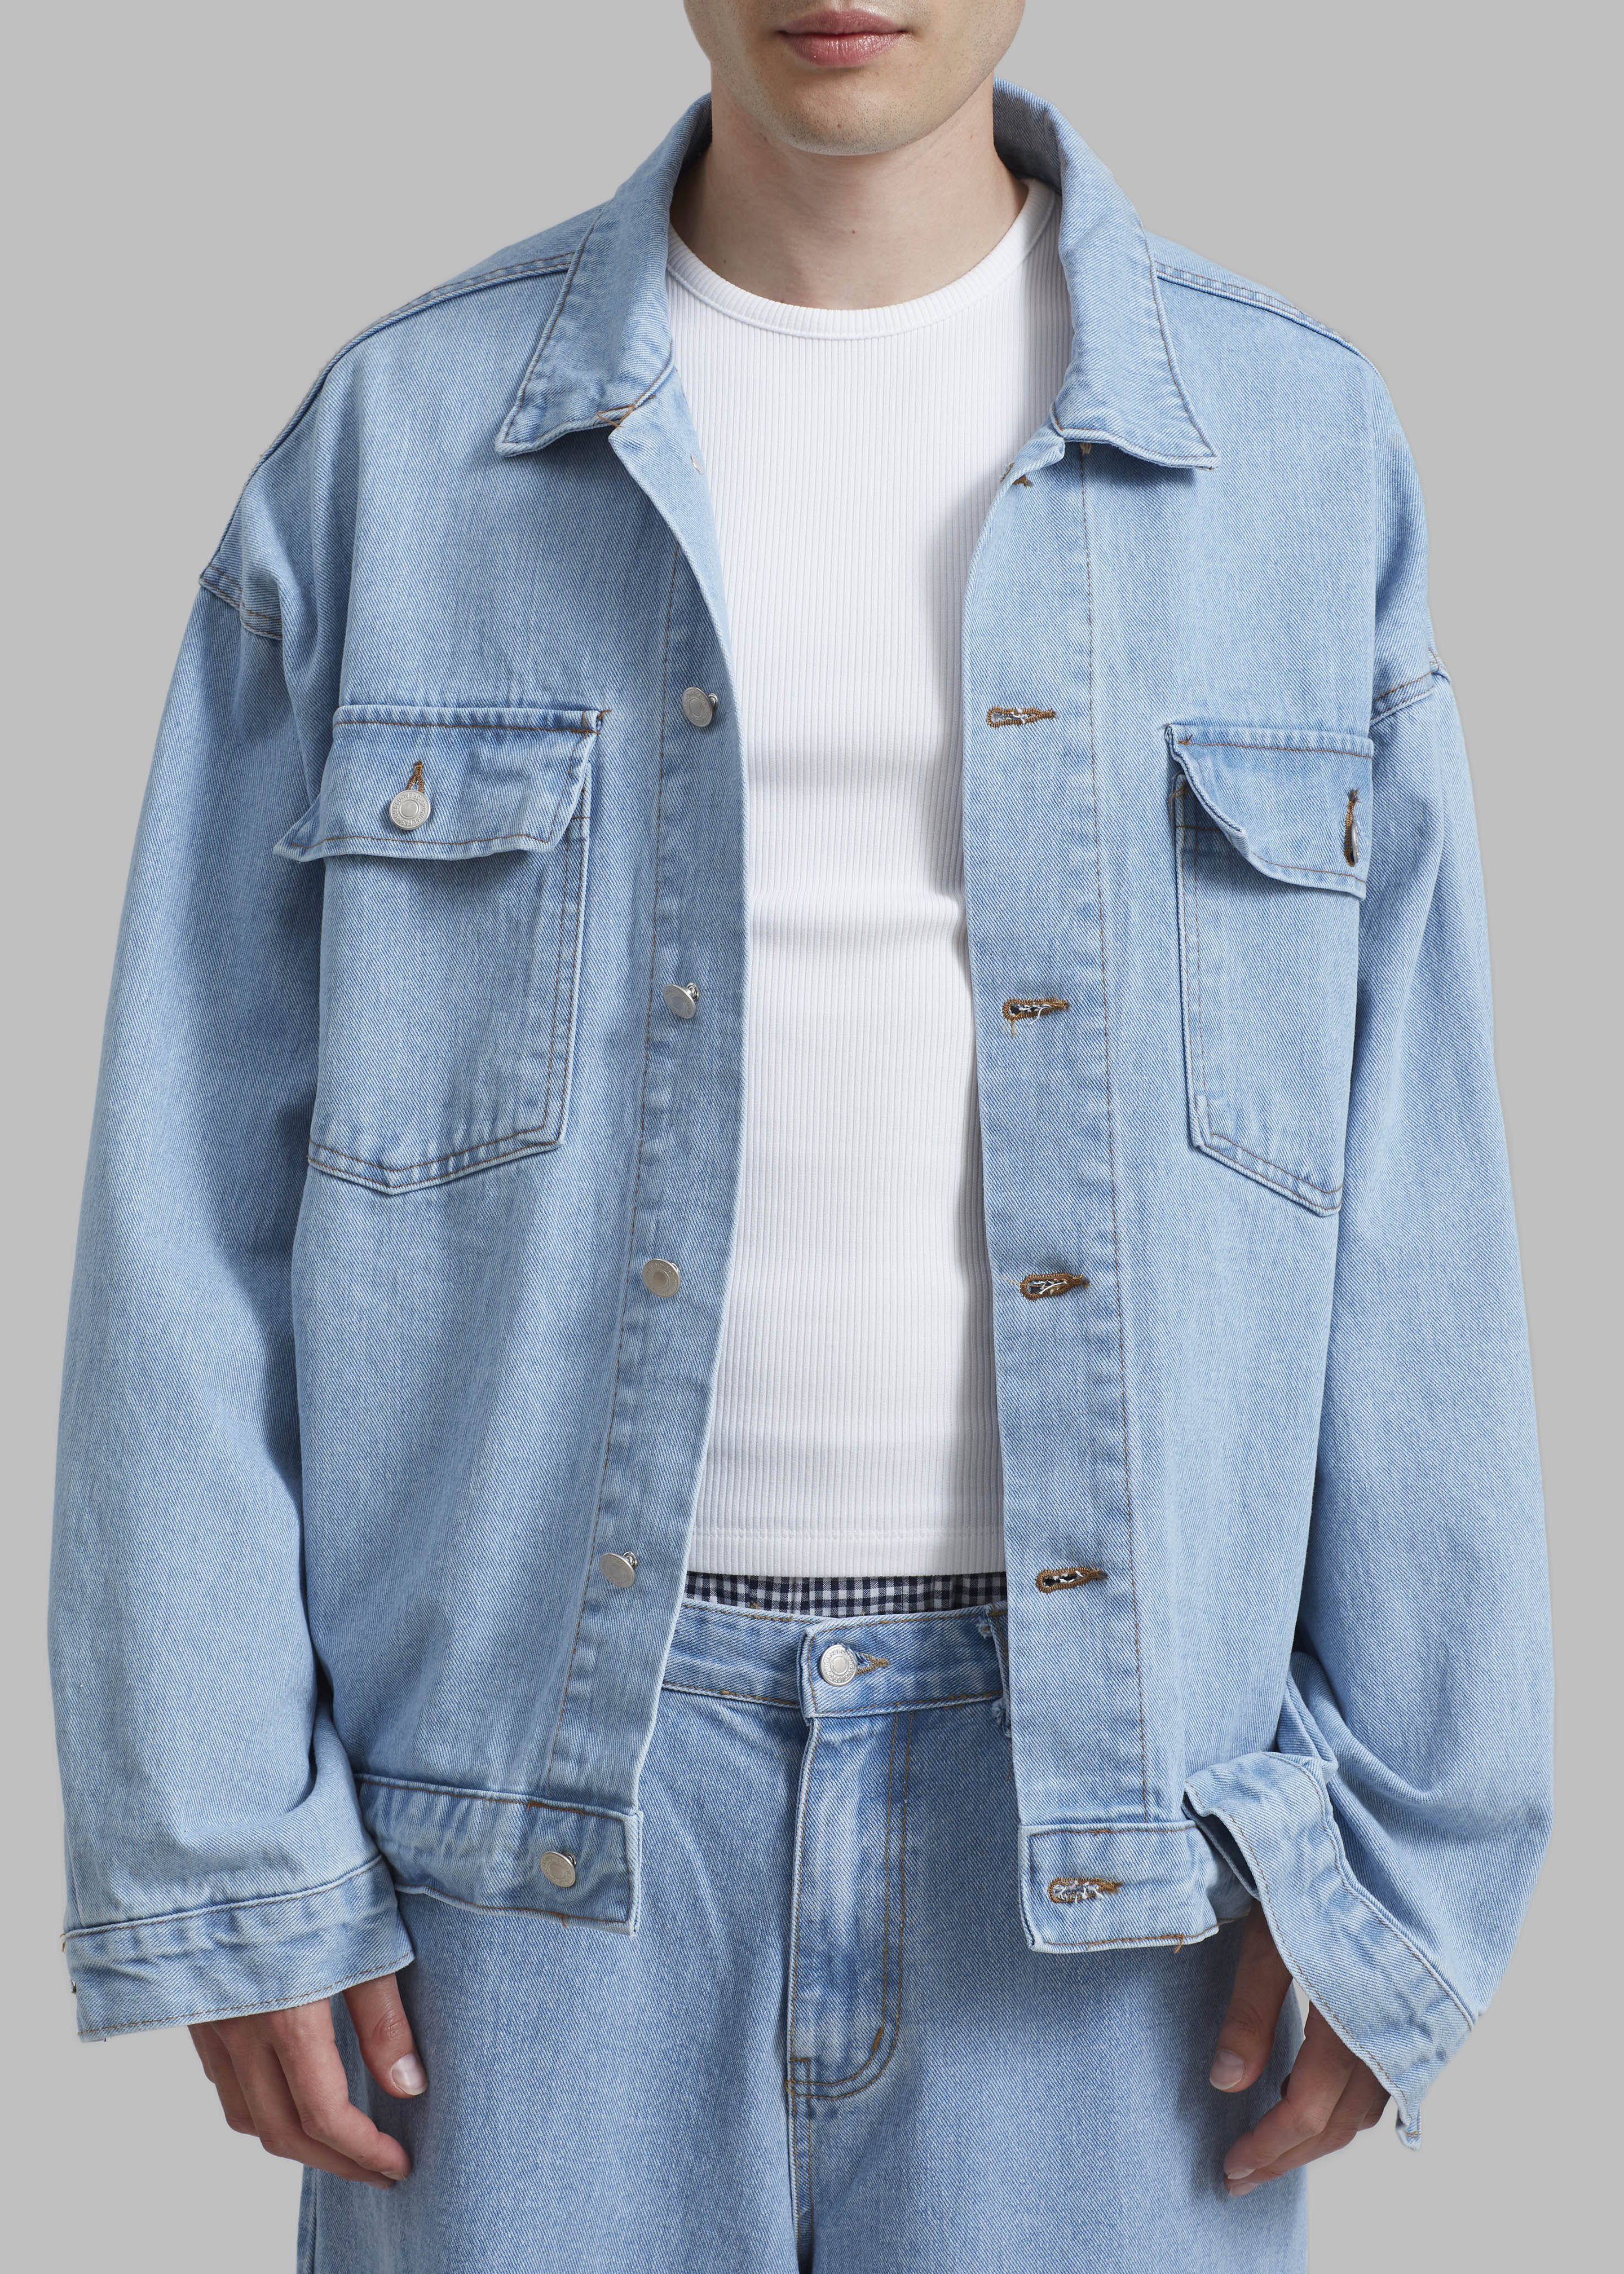 ESPRIT - Oversized jeans jacket, 100% cotton at our online shop